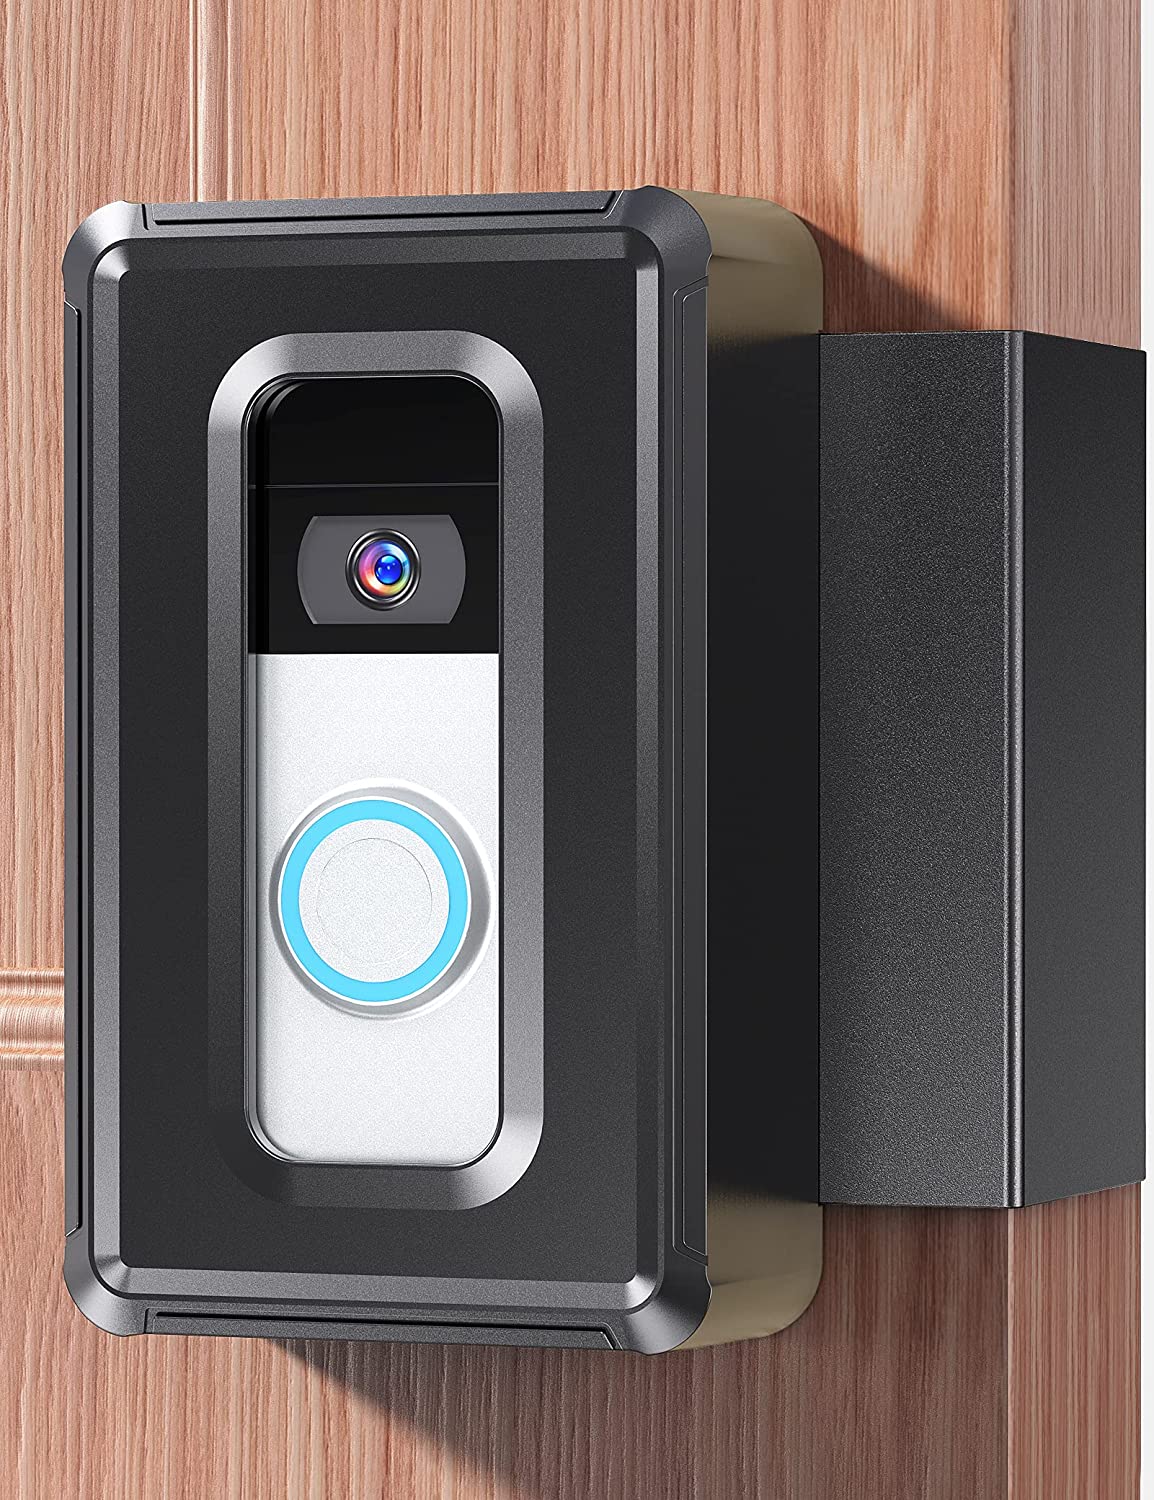 DG-Direct Anti-Theft Video Doorbell Door Mount, Video Doorbell Mount for Home Apartment, Rentals, Businesses, Office.